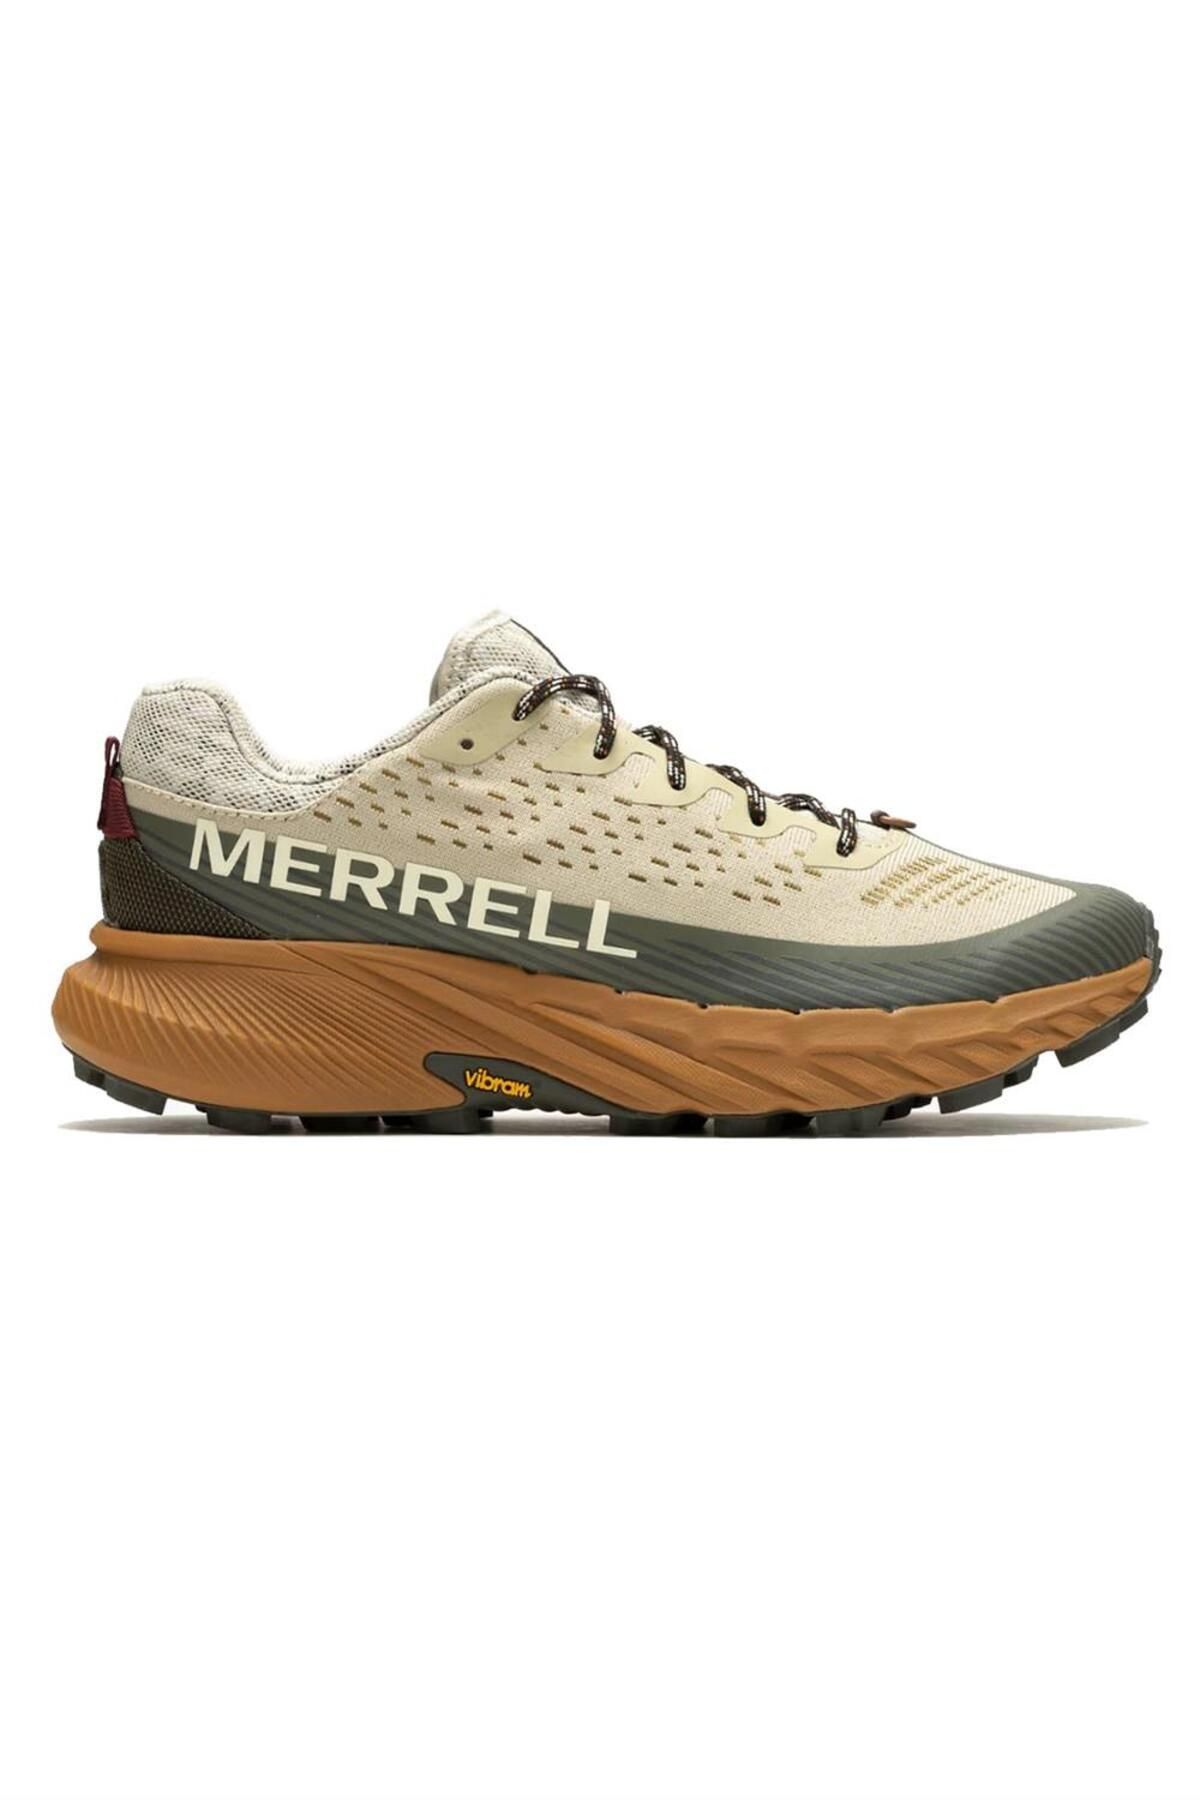 Merrell Agılıty Peak 5 Erkek Patika Koşu Ayakkabısı J067767